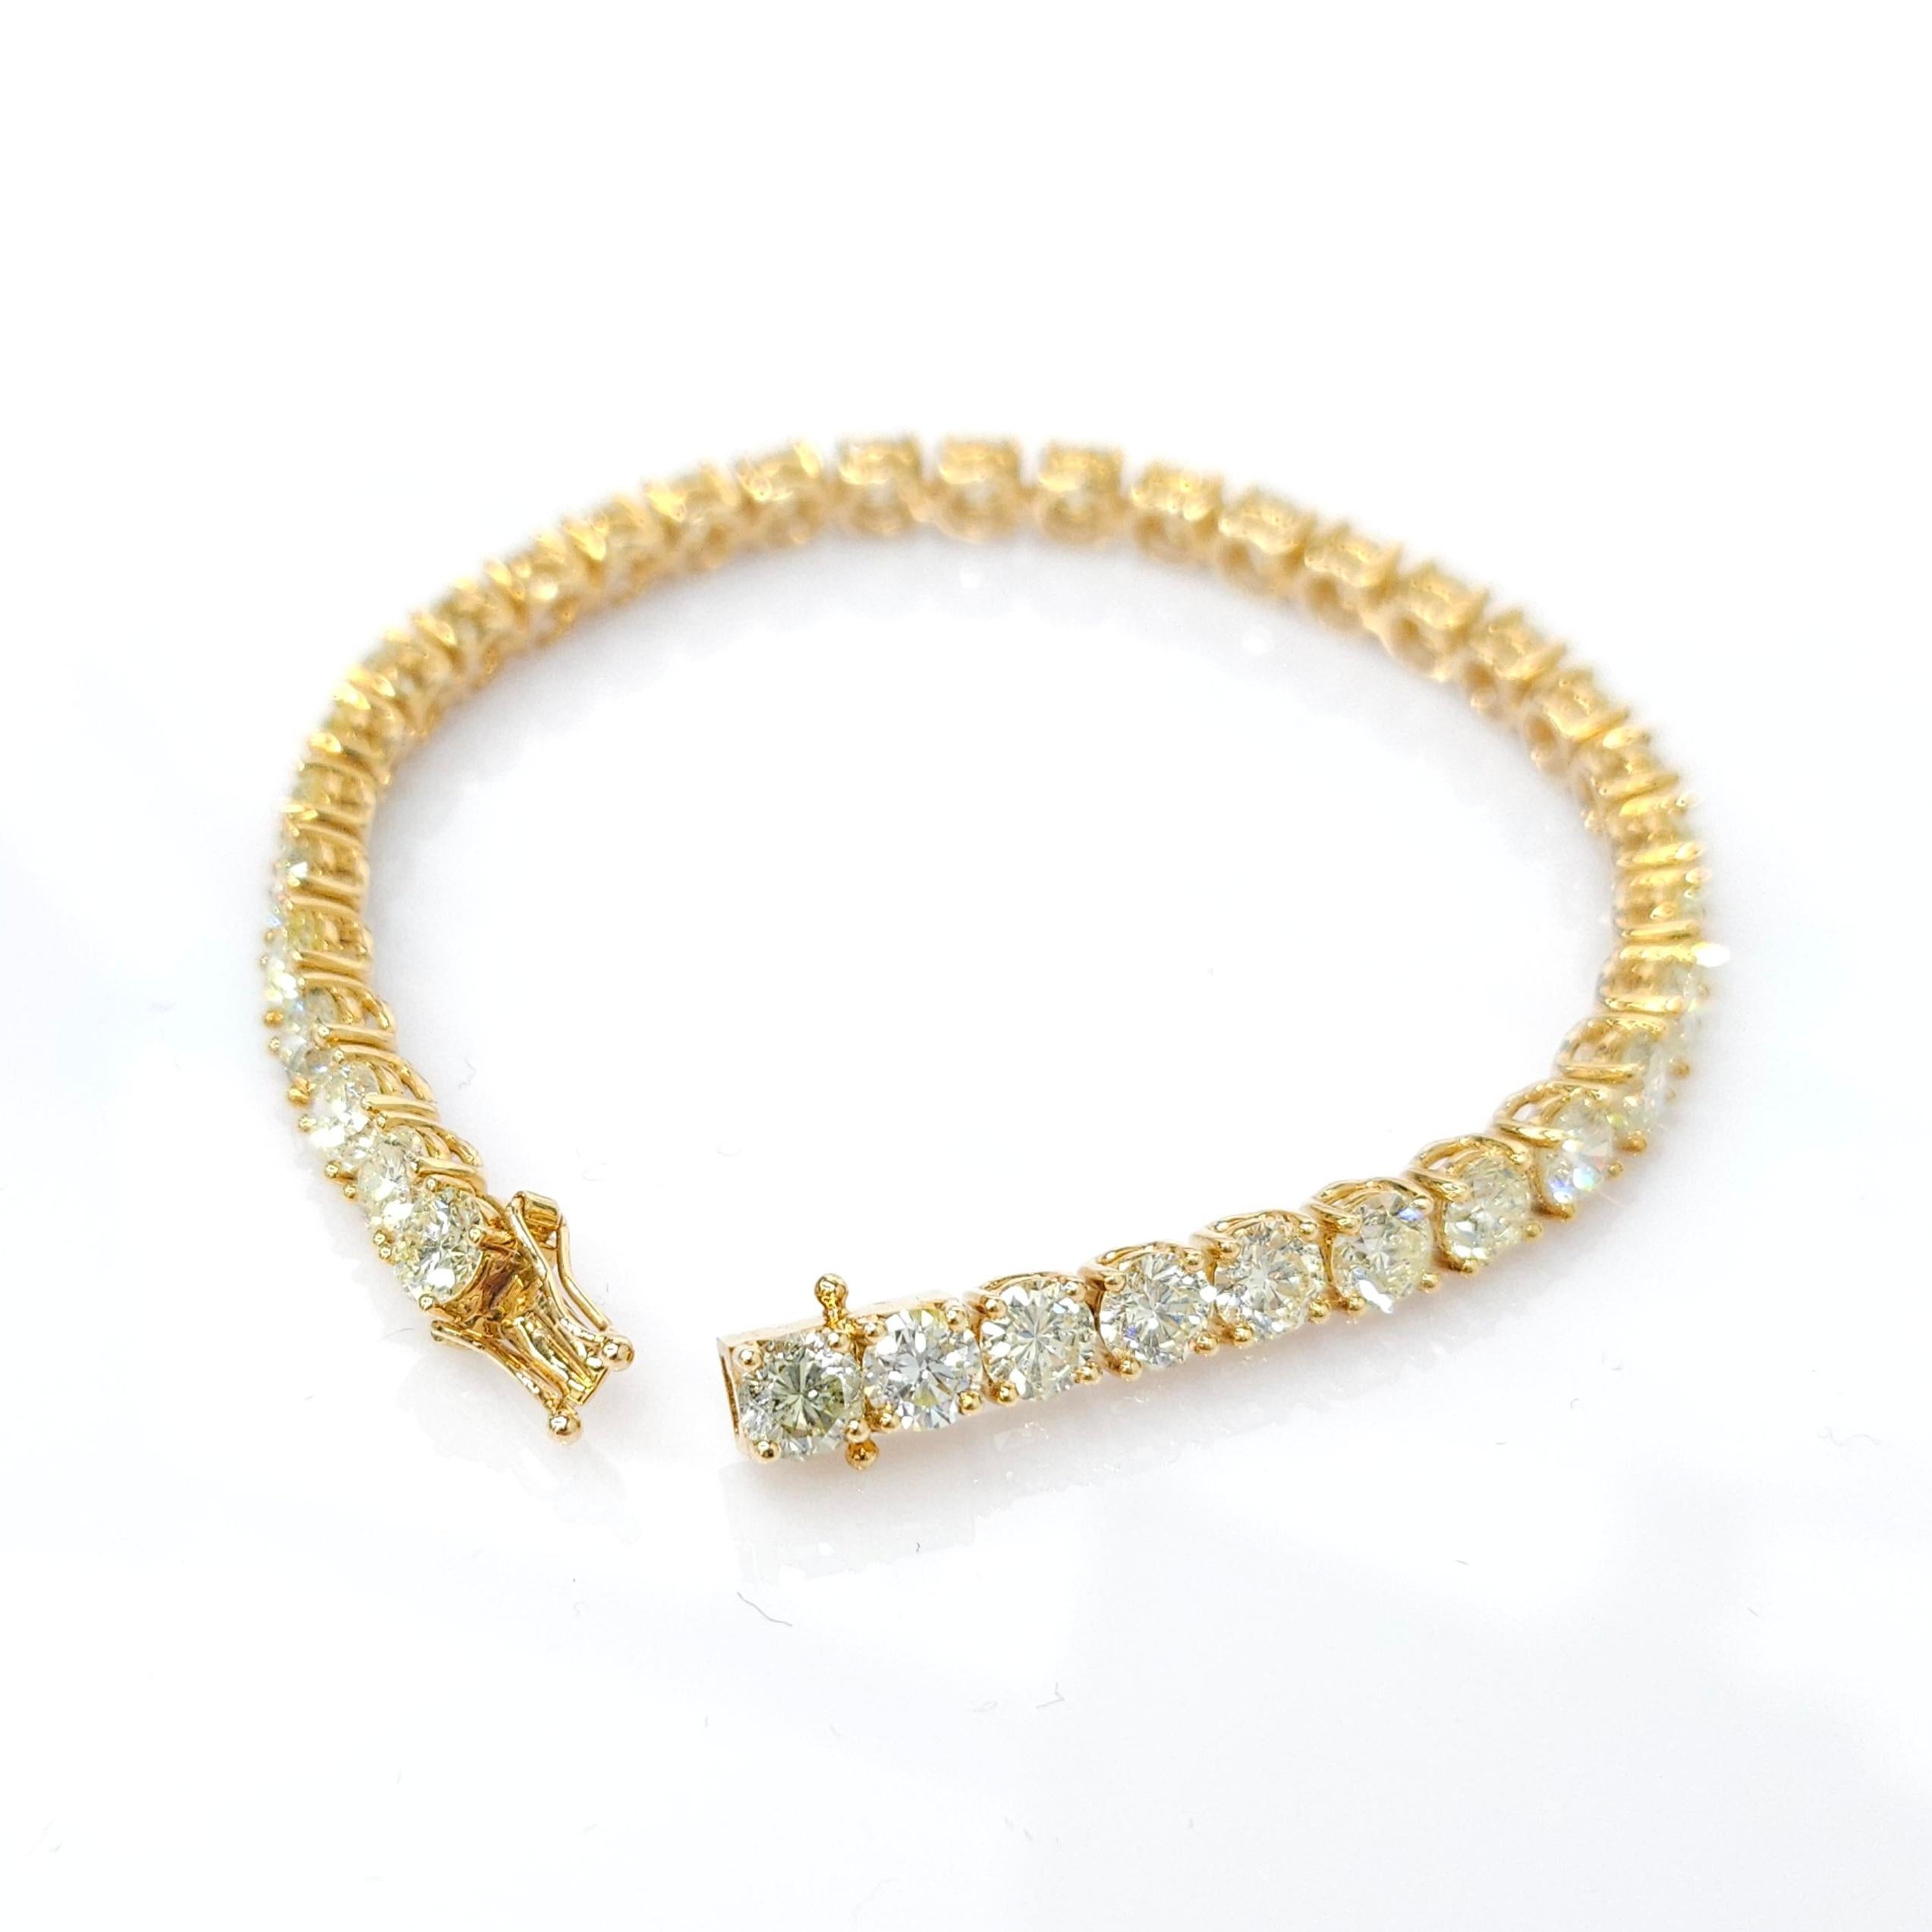 Ornez votre poignet de l'élégance intemporelle et de la beauté chatoyante de cet exquis bracelet de tennis en or jaune 18 carats à diamants ronds totaux de 11,65 carats. Fabriqué à la perfection, ce bracelet est une véritable pièce d'apparat qui